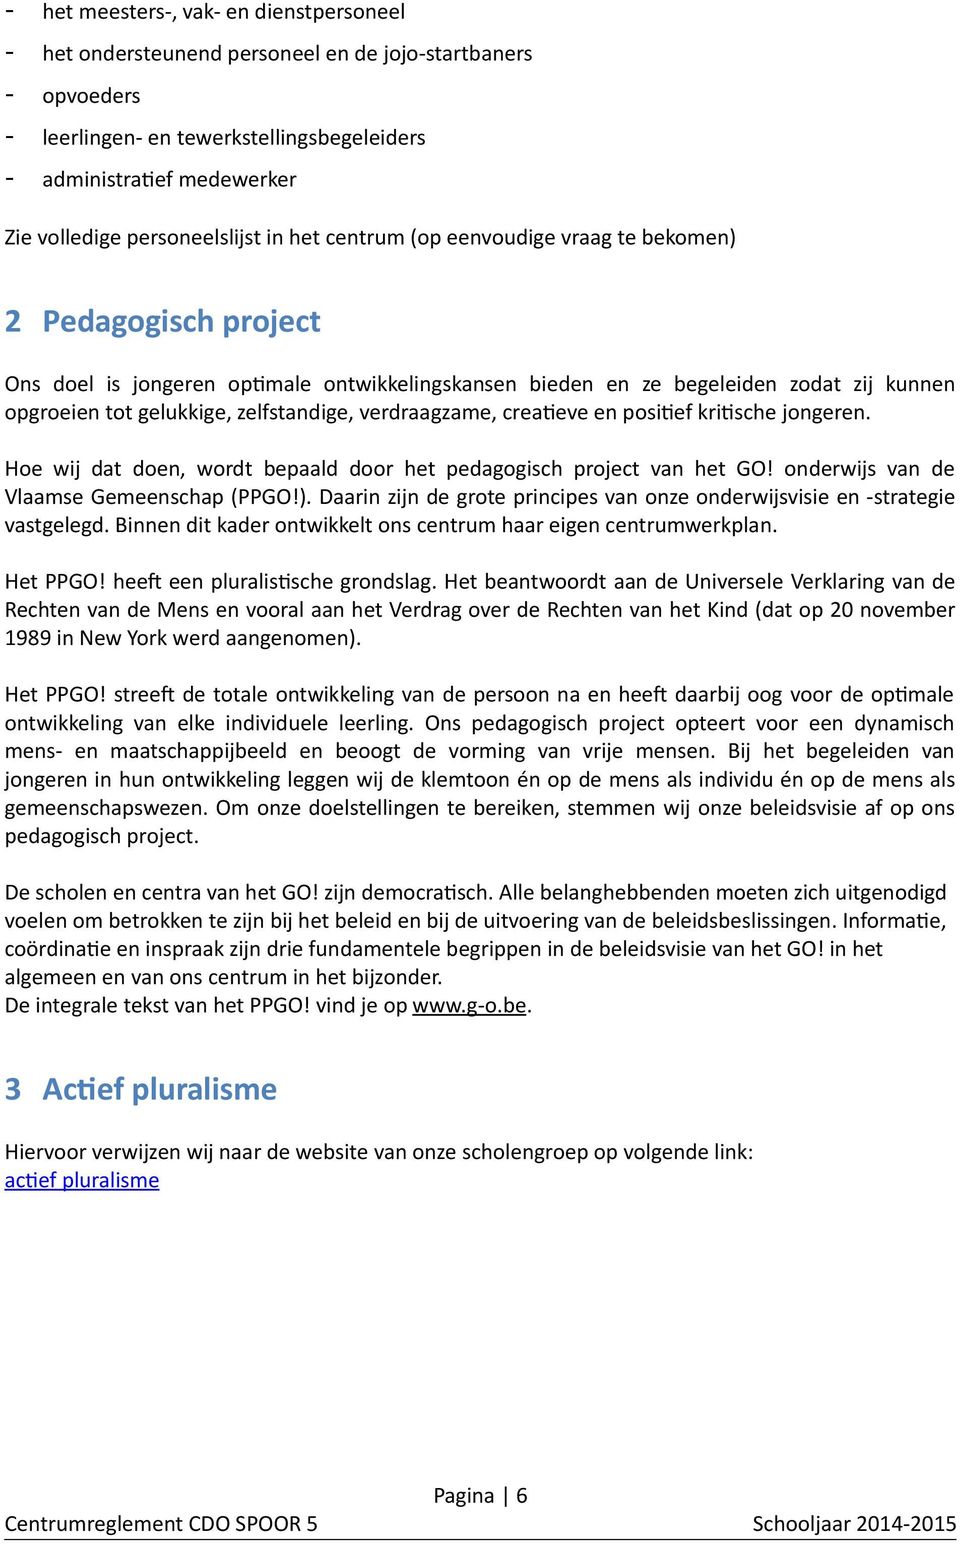 gelukkige, zelfstandige, verdraagzame, creatieve en positief kritische jongeren. Hoe wij dat doen, wordt bepaald door het pedagogisch project van het GO! onderwijs van de Vlaamse Gemeenschap (PPGO!).